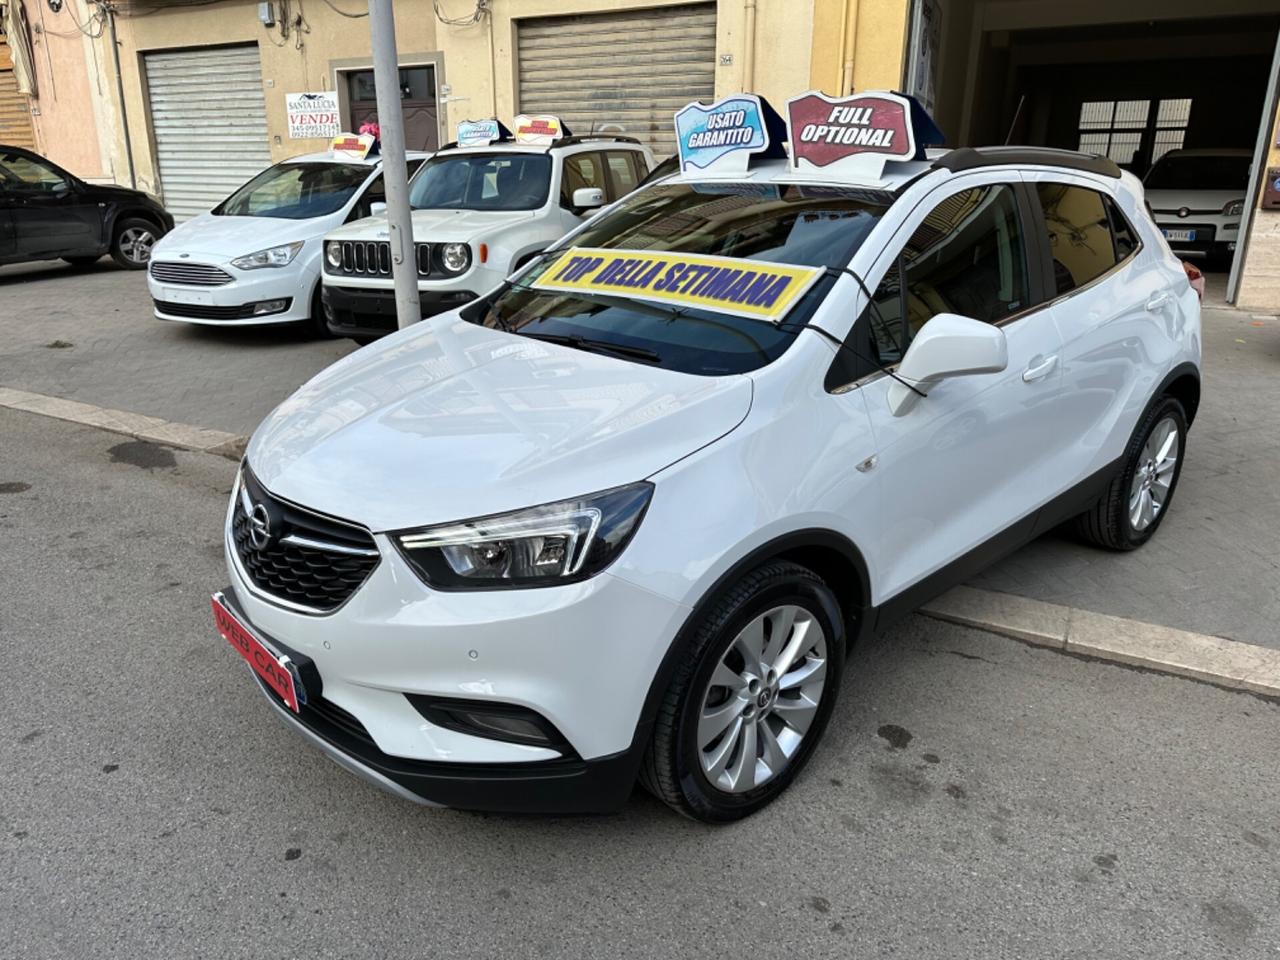 Opel Mokka X 1.6 CDTI 4x2 11/2017 KM 76260 CERT 1PROP